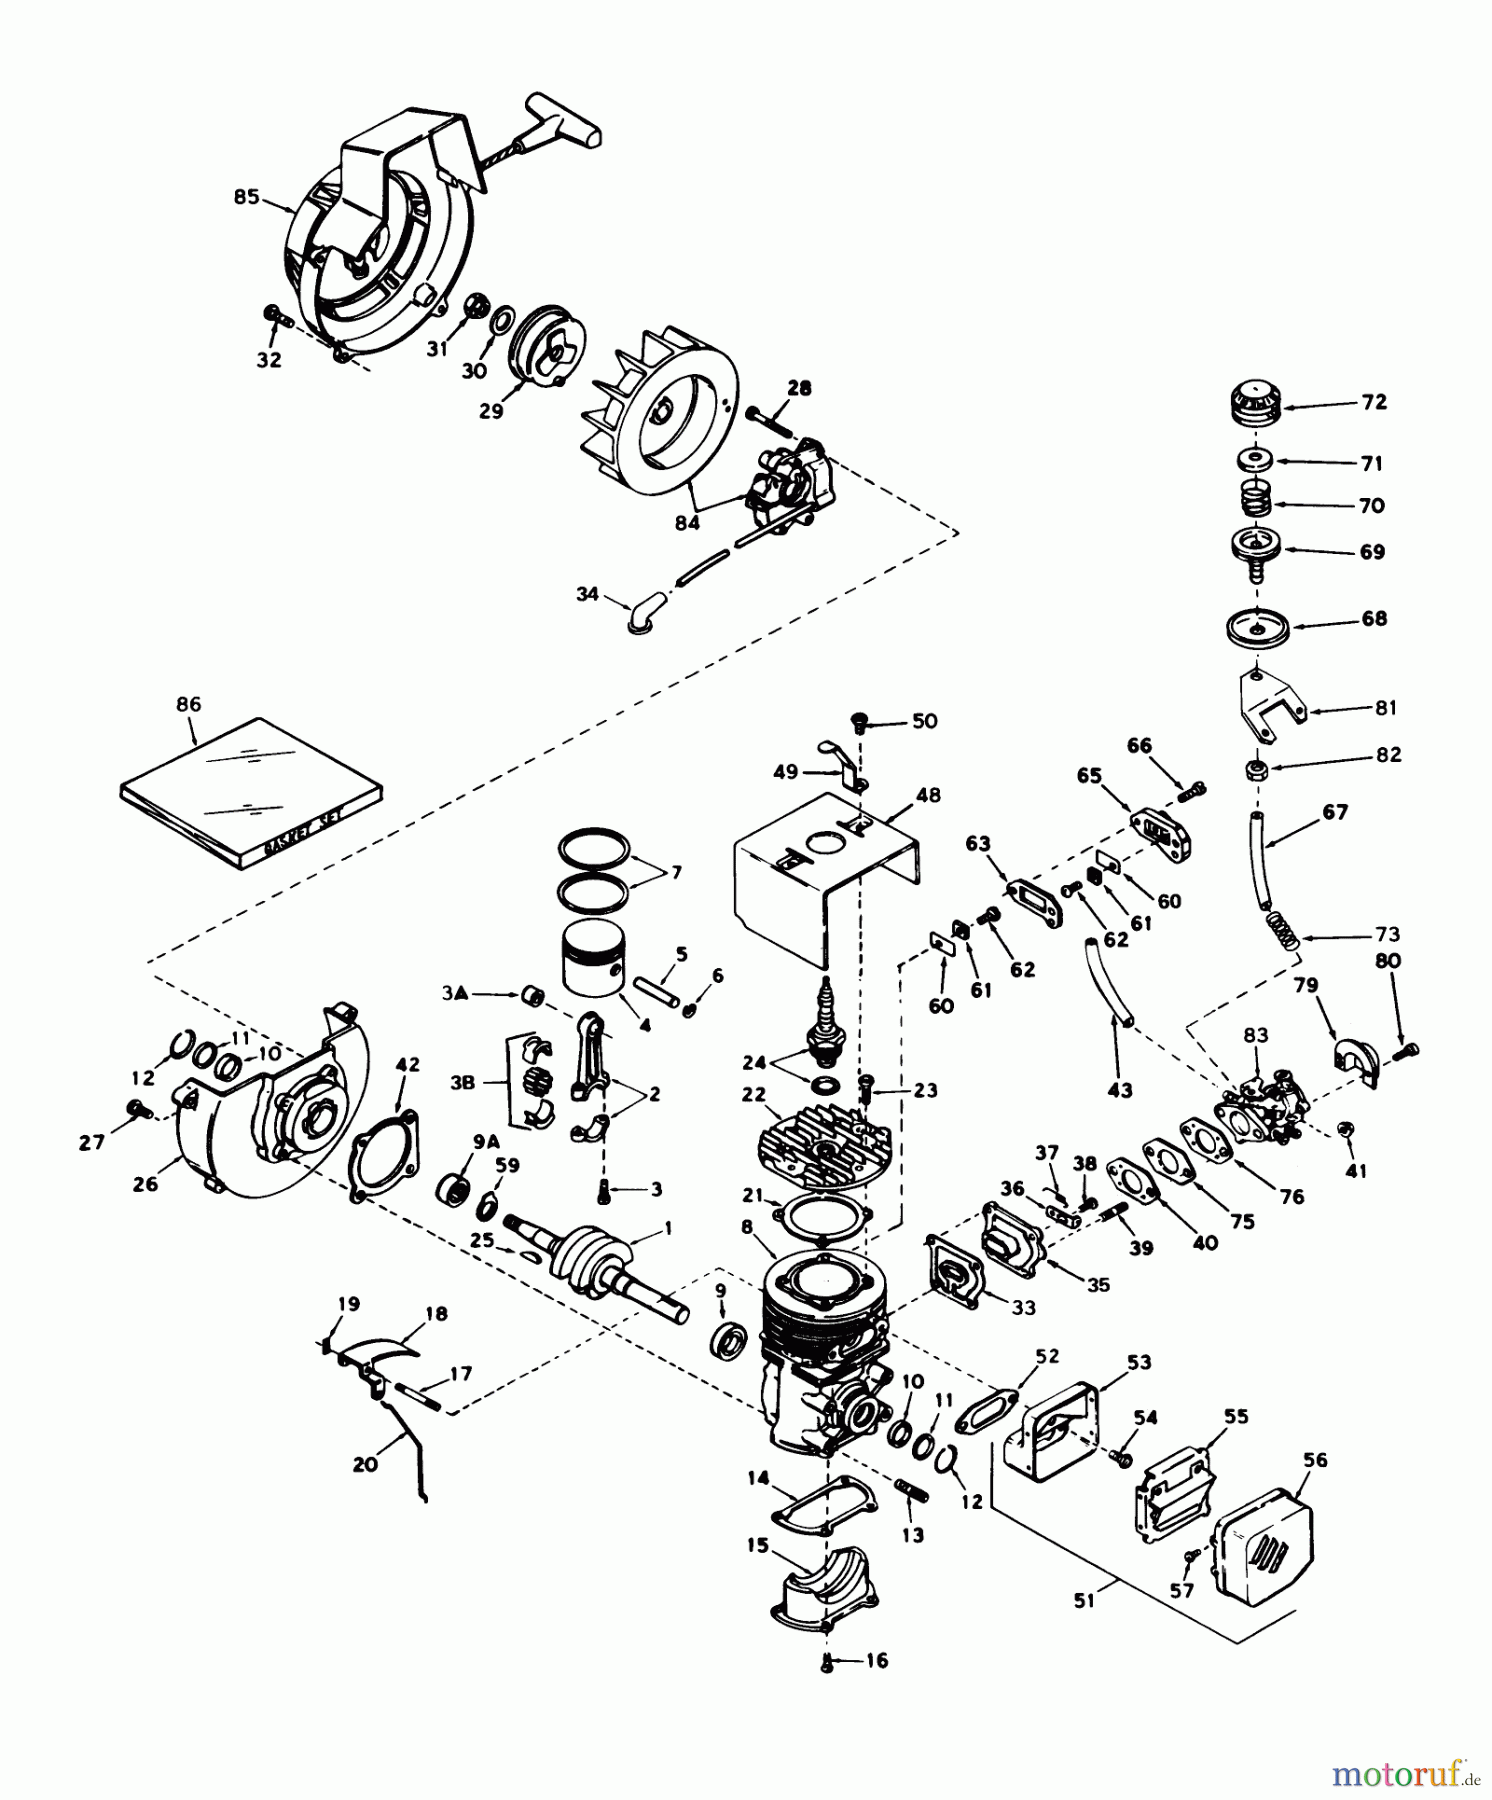  Toro Neu Snow Blowers/Snow Throwers Seite 1 31405 - Toro Snow Pup, 1976 (6000001-6999999) ENGINE TECUMSEH MODEL NO. AH520 TYPE 1401J